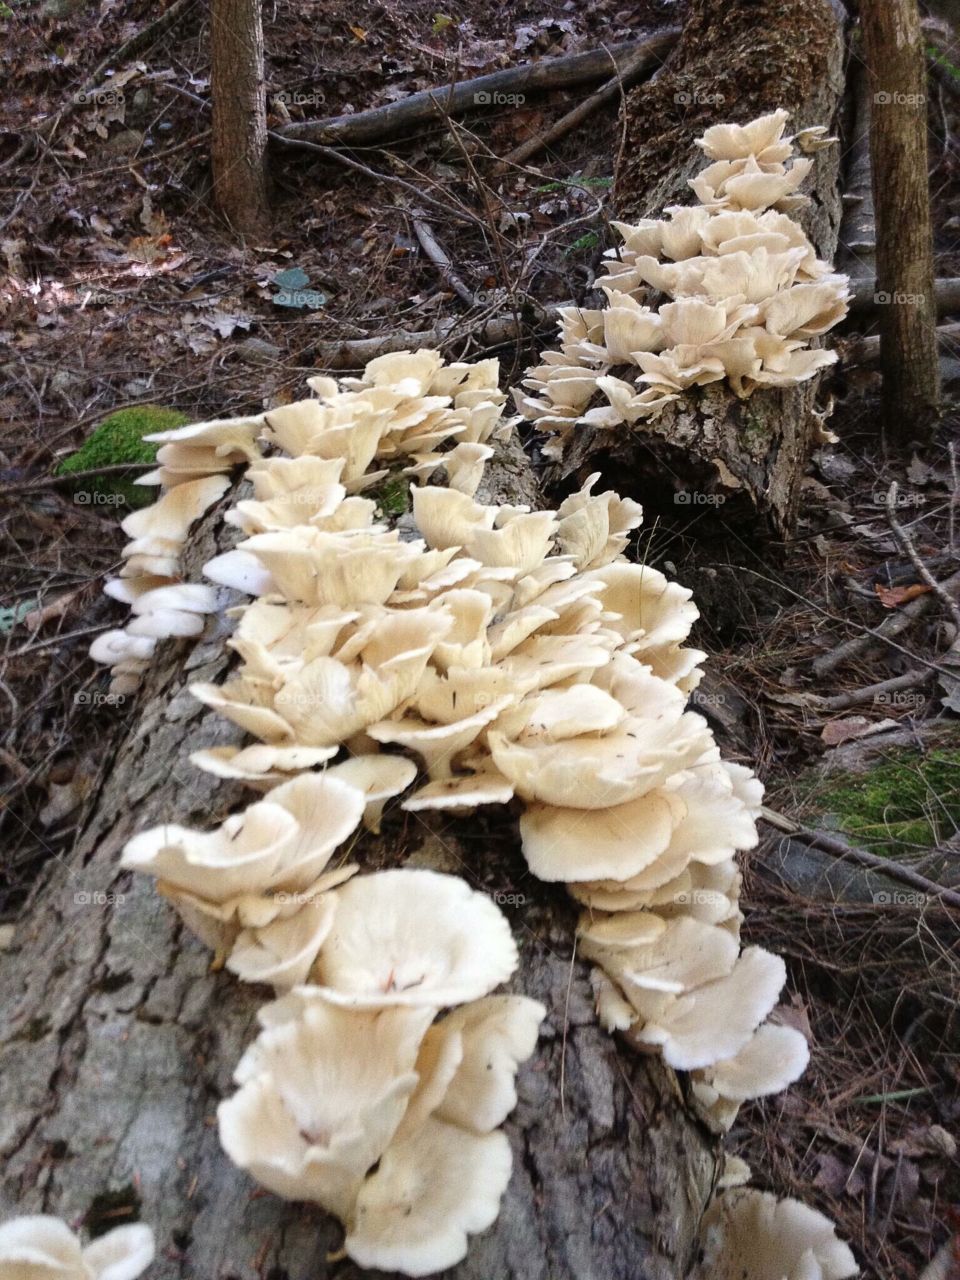 Mushroom. Edible Wild Mushrooms 